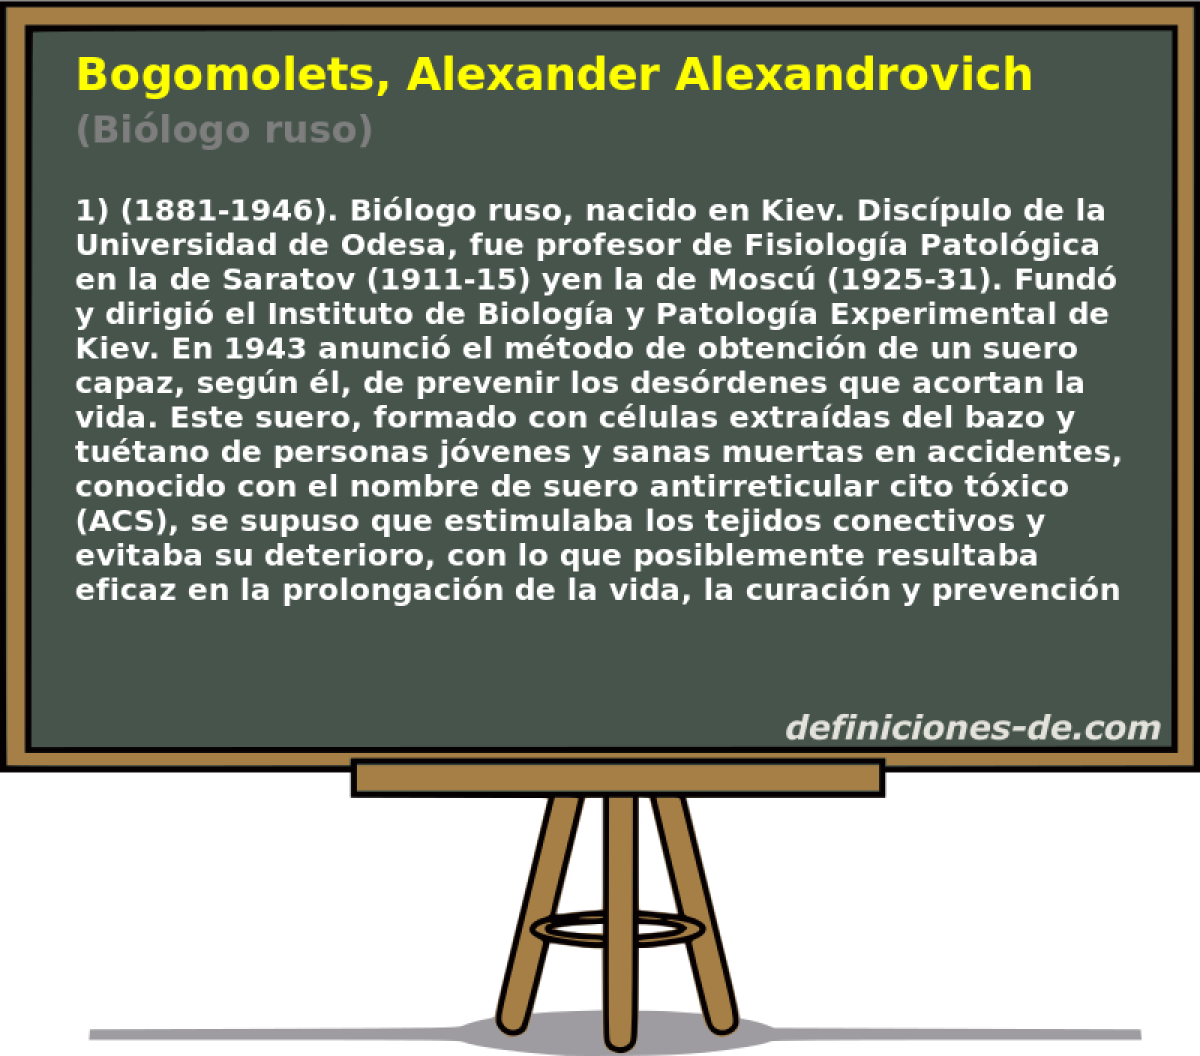 Bogomolets, Alexander Alexandrovich (Bilogo ruso)